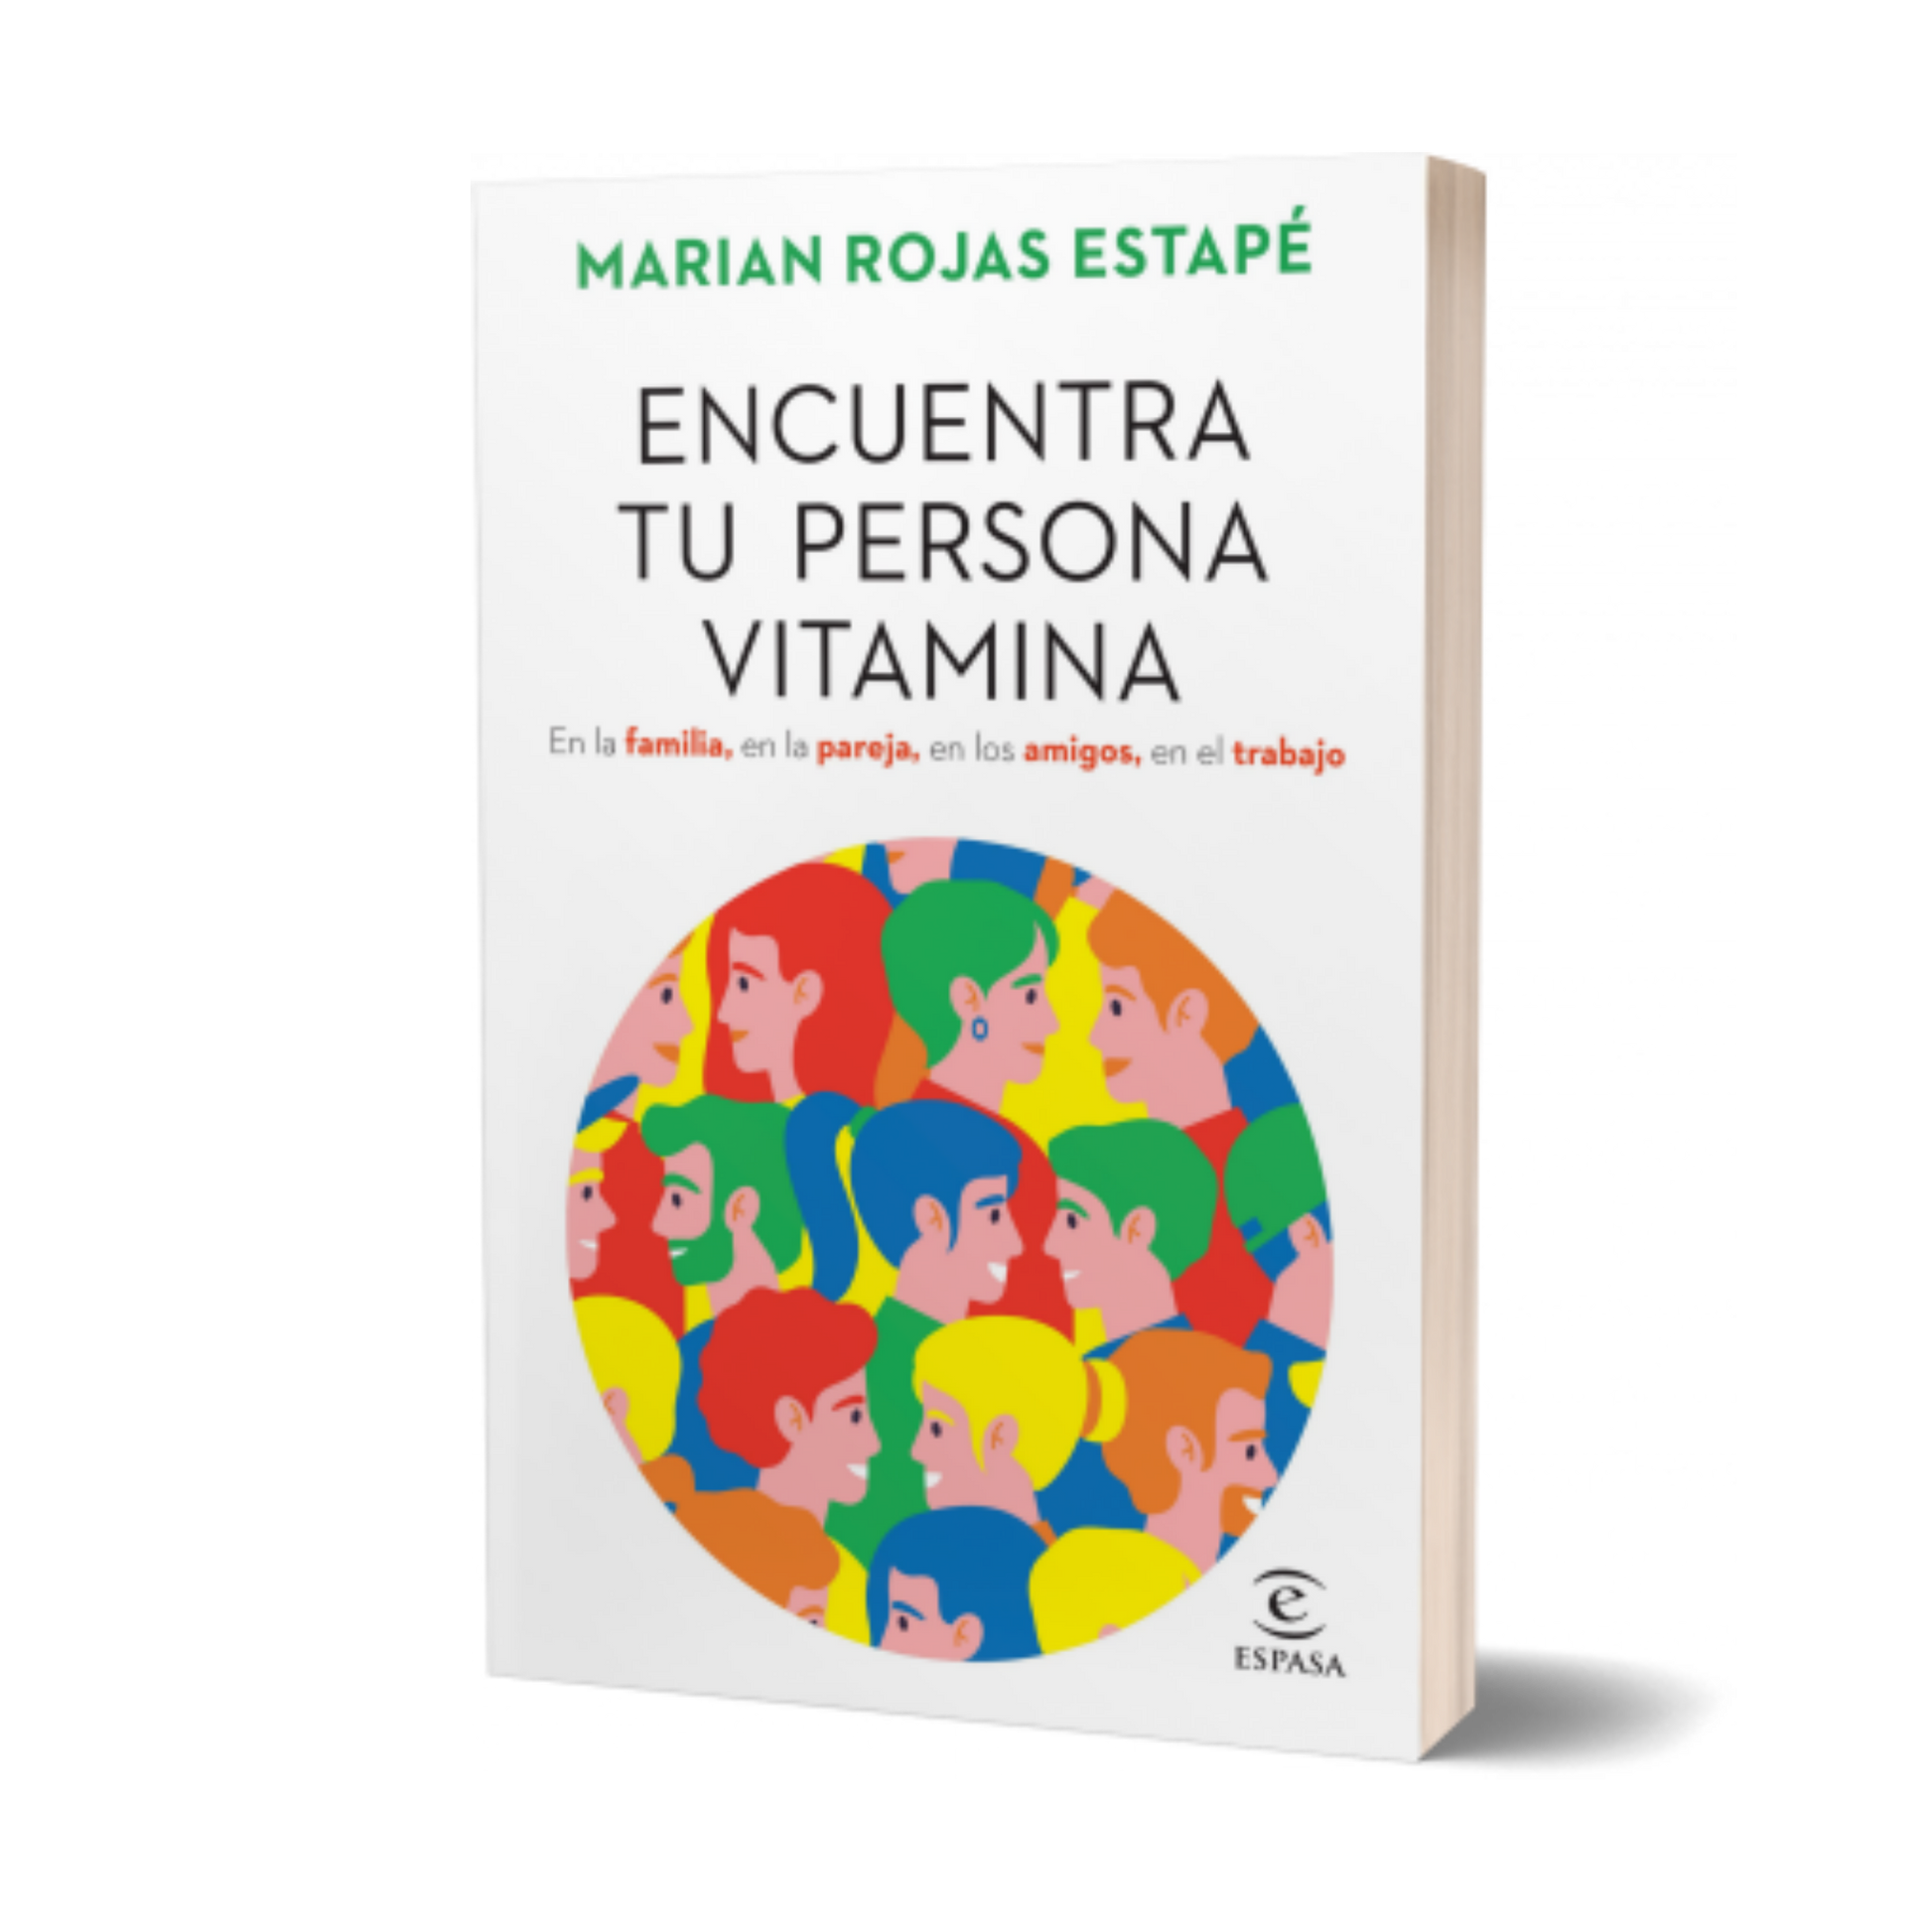 Planeta de Libros Chile - La doctora Marian Rojas Estapé regresa a  librerías con un texto de crecimiento personal en el que nos impulsa a  encontrar personas vitamina, aquellas que sacan lo